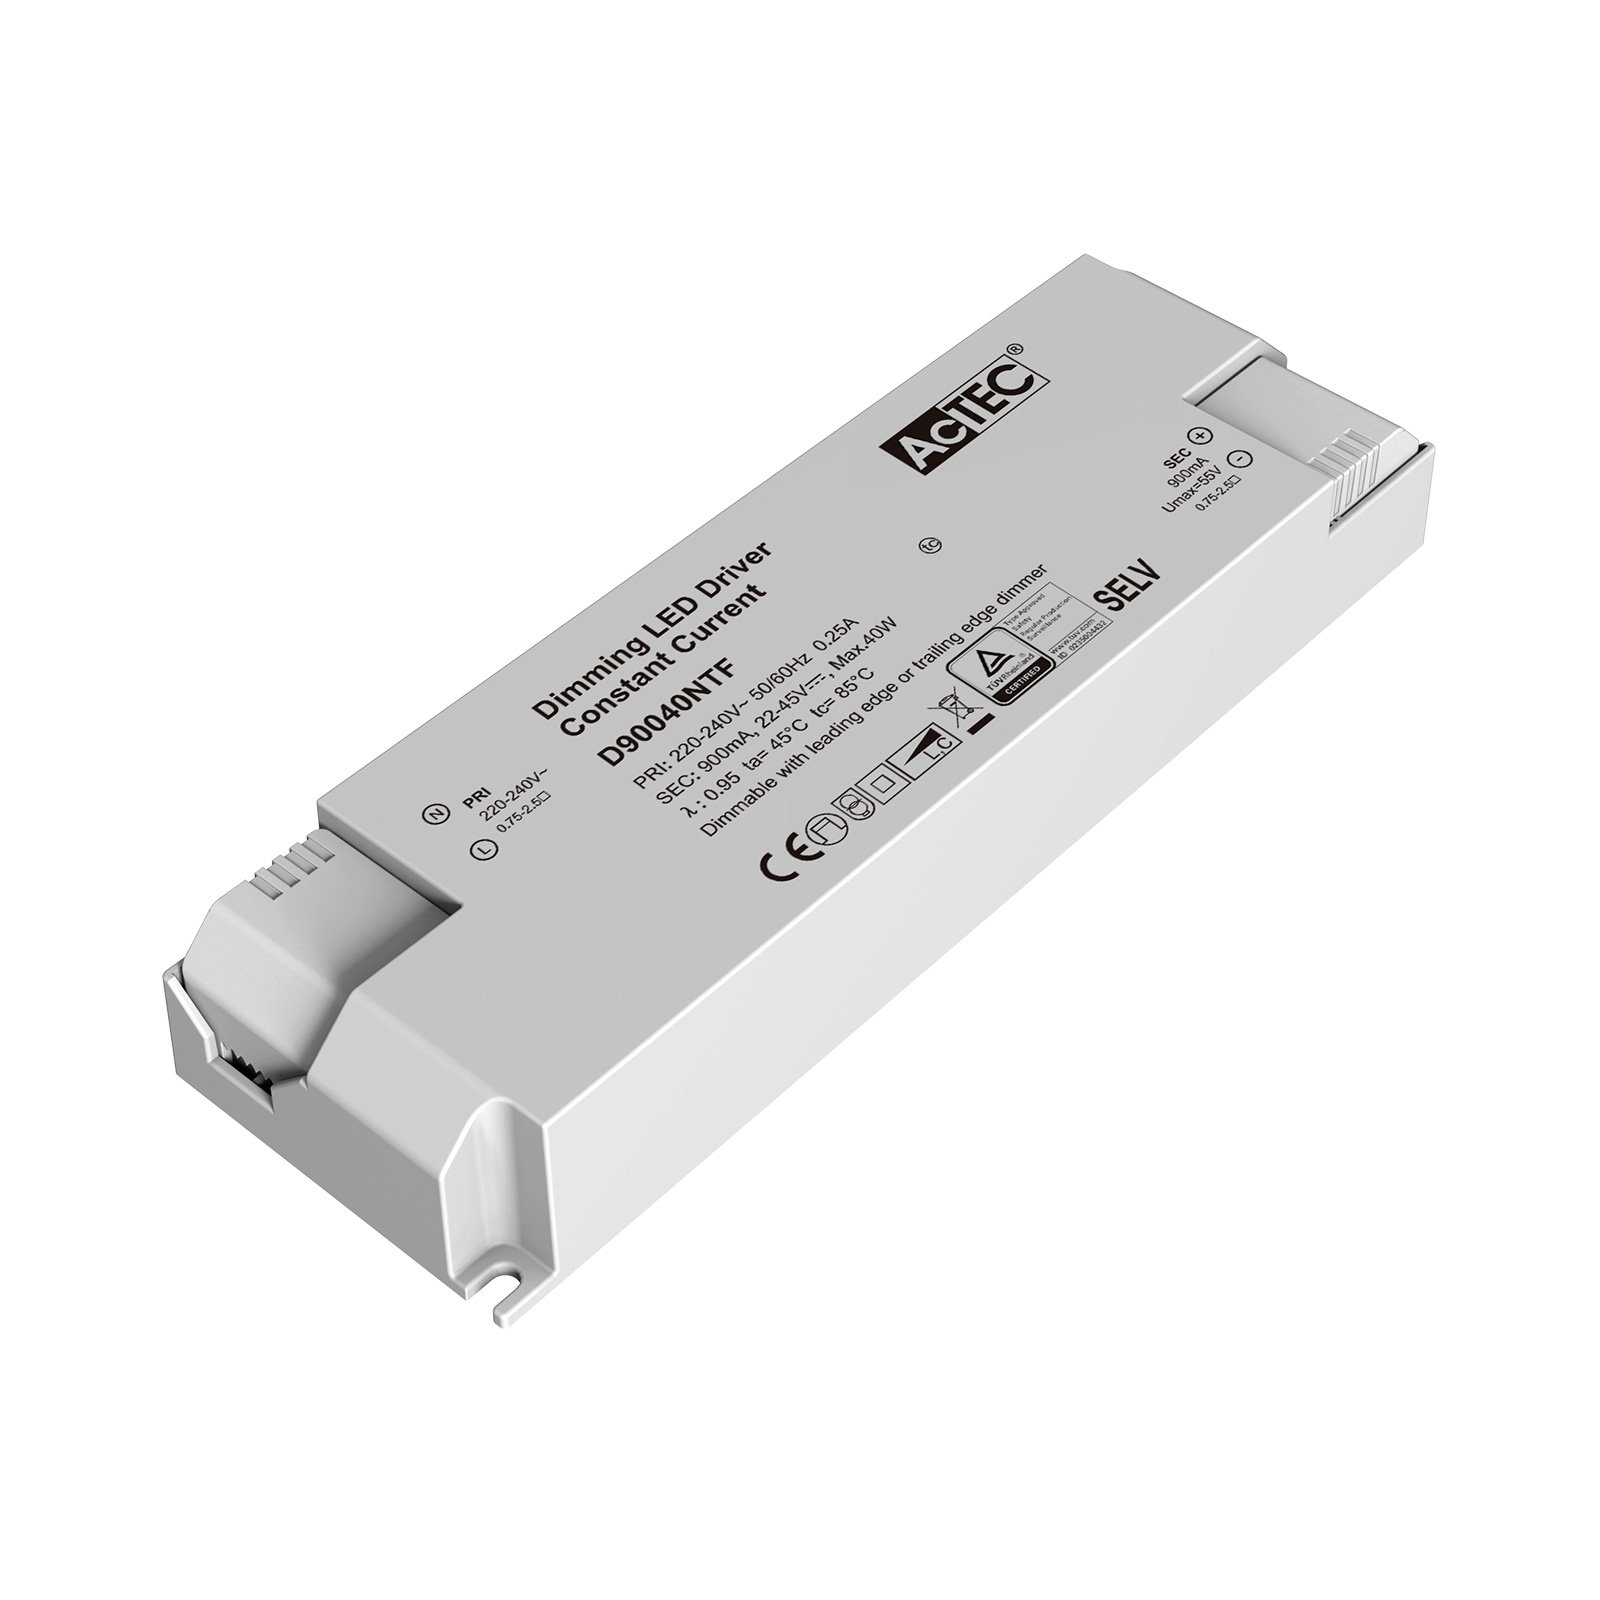 AcTEC Triac -LED-muuntaja CC maks. 40 W, 900 mA